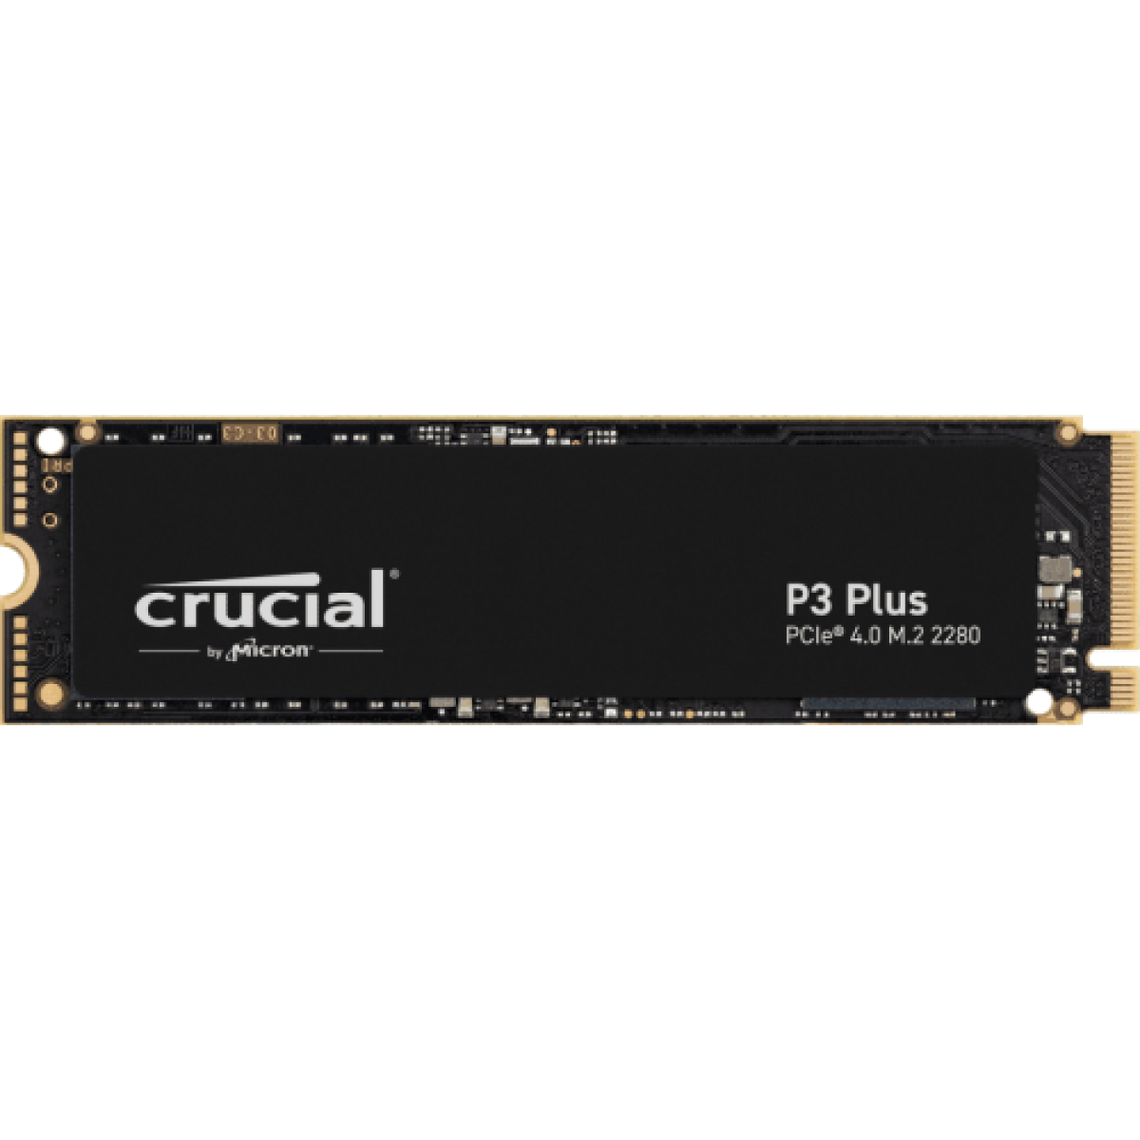 Crucial P3 Plus Disque Dur SSD Interne 500Go 4700Mo/s 3D NAND NVMe PCIe 4.0 Noir